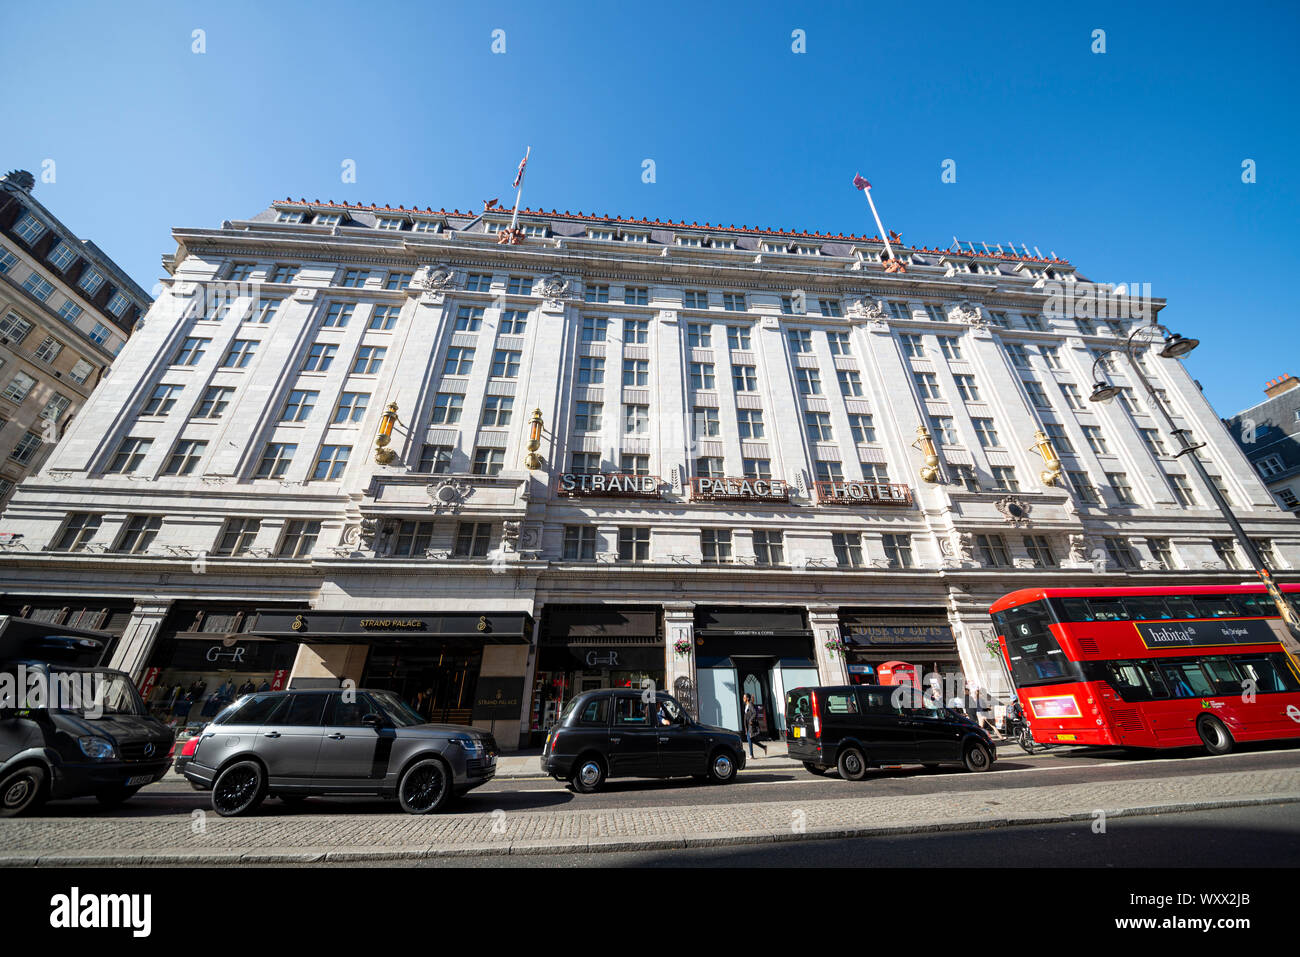 Hôtel Strand Palace. Hôtel de style Art déco situé à The Strand, à Londres, au Royaume-Uni, doté de taxis noirs et d'un bus rouge londonien. Cabine téléphonique rouge. Ciel bleu Banque D'Images